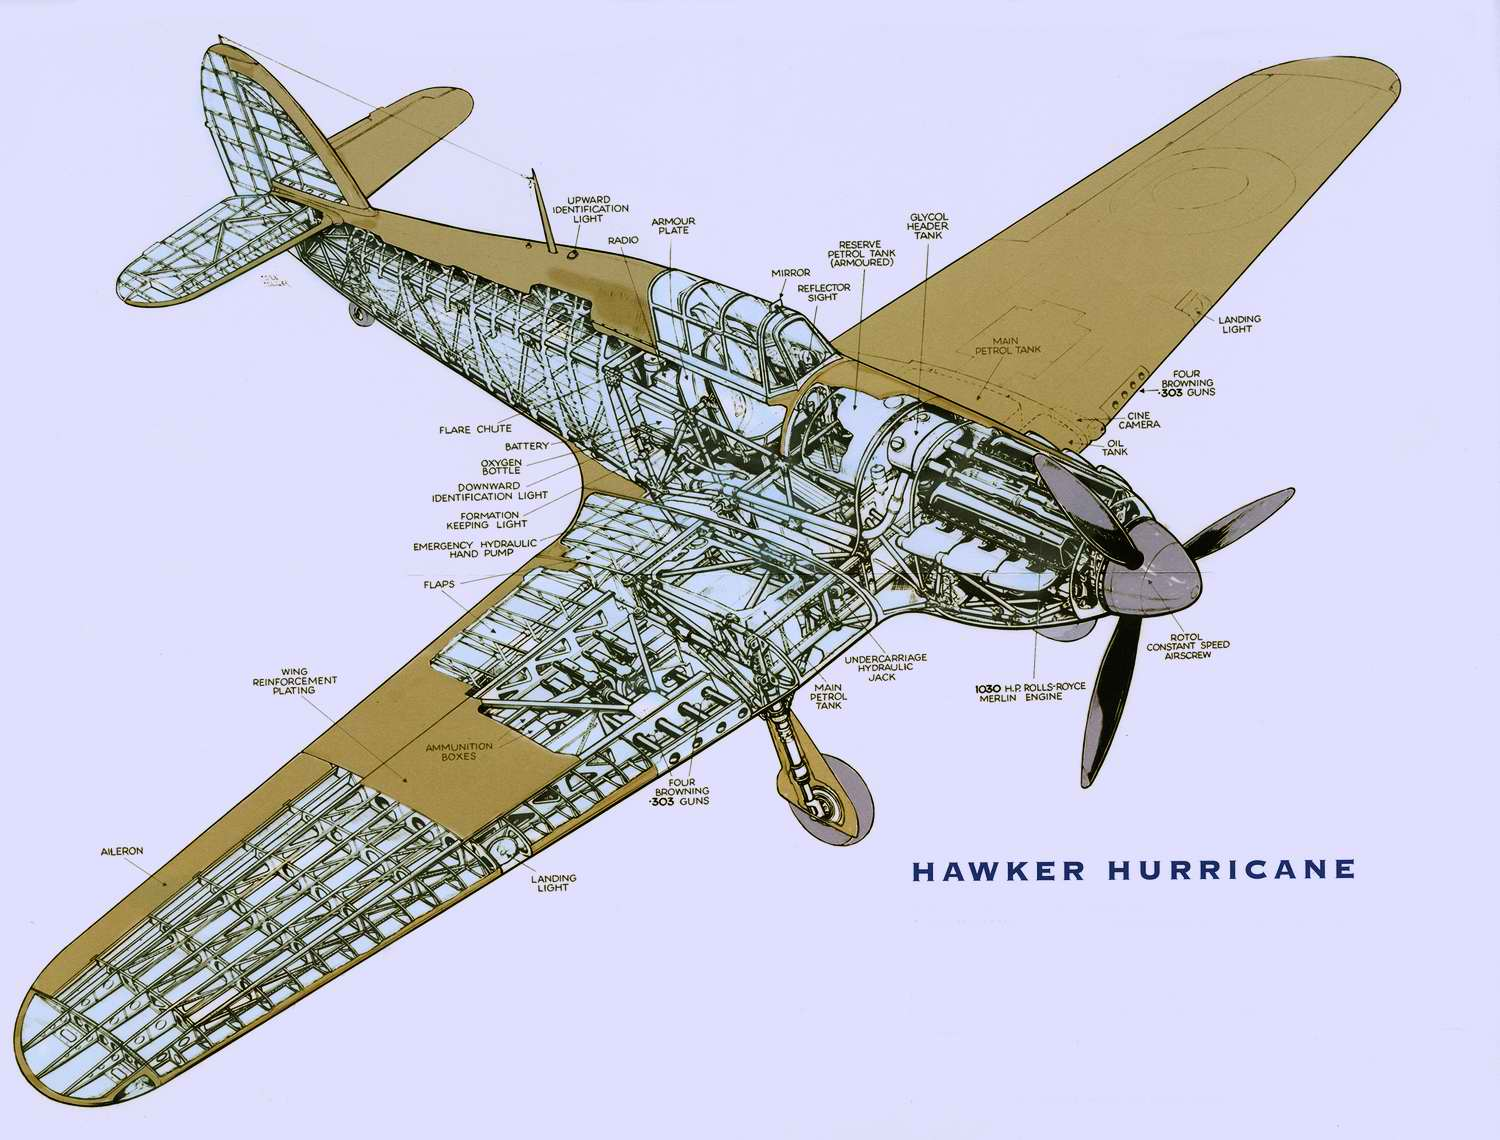 飓风的机体也是套用了双翼机的设计,但是为了对应高速产生的应力,机身